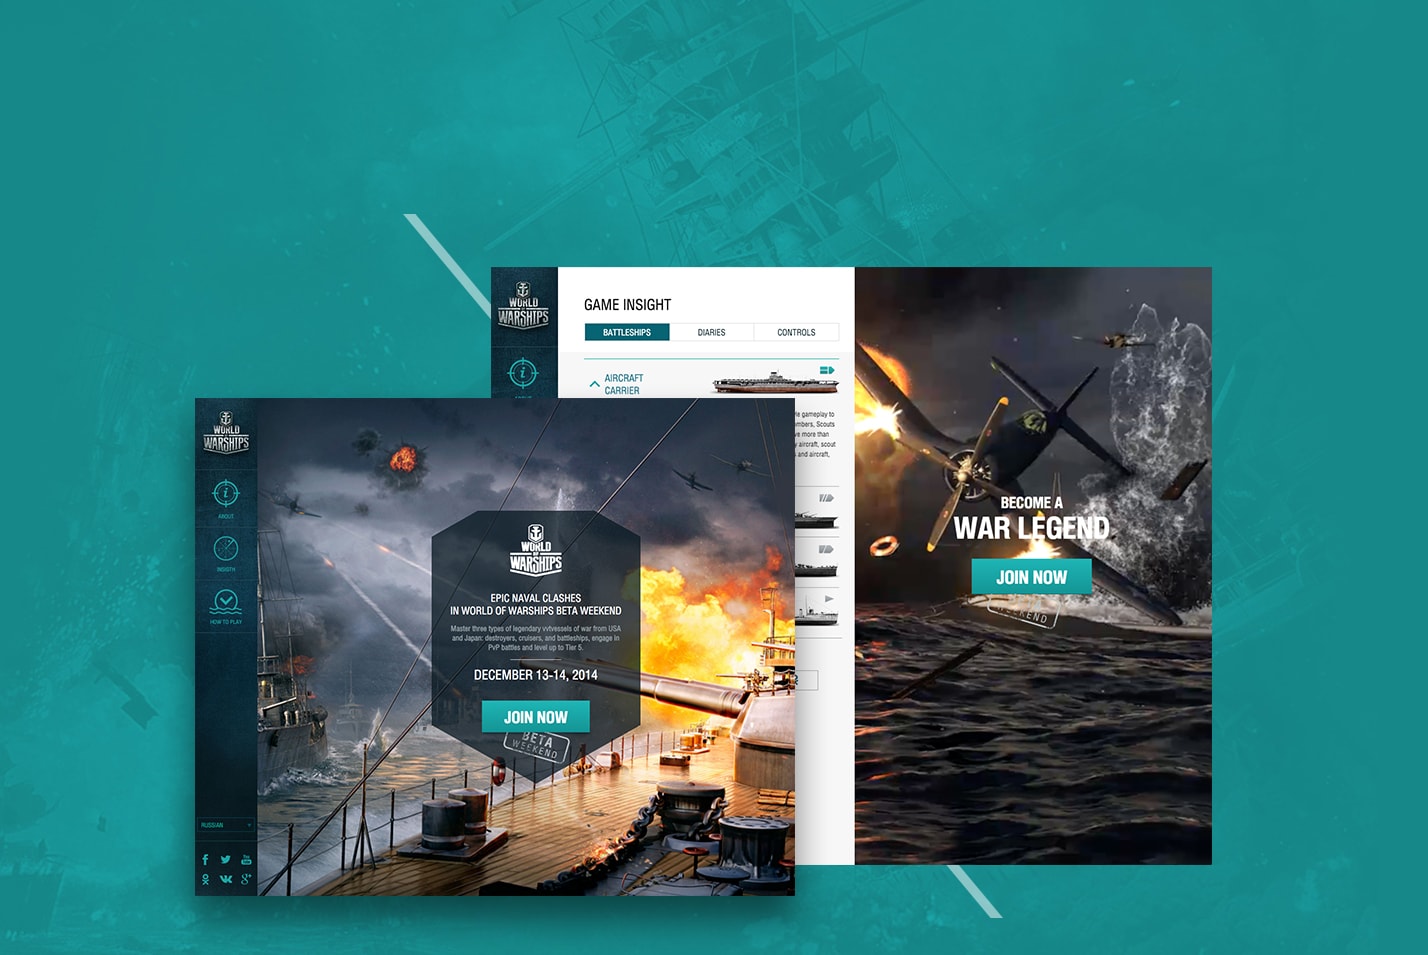 Сайт, приуроченный к запуску бета тестирования игры World of Warships